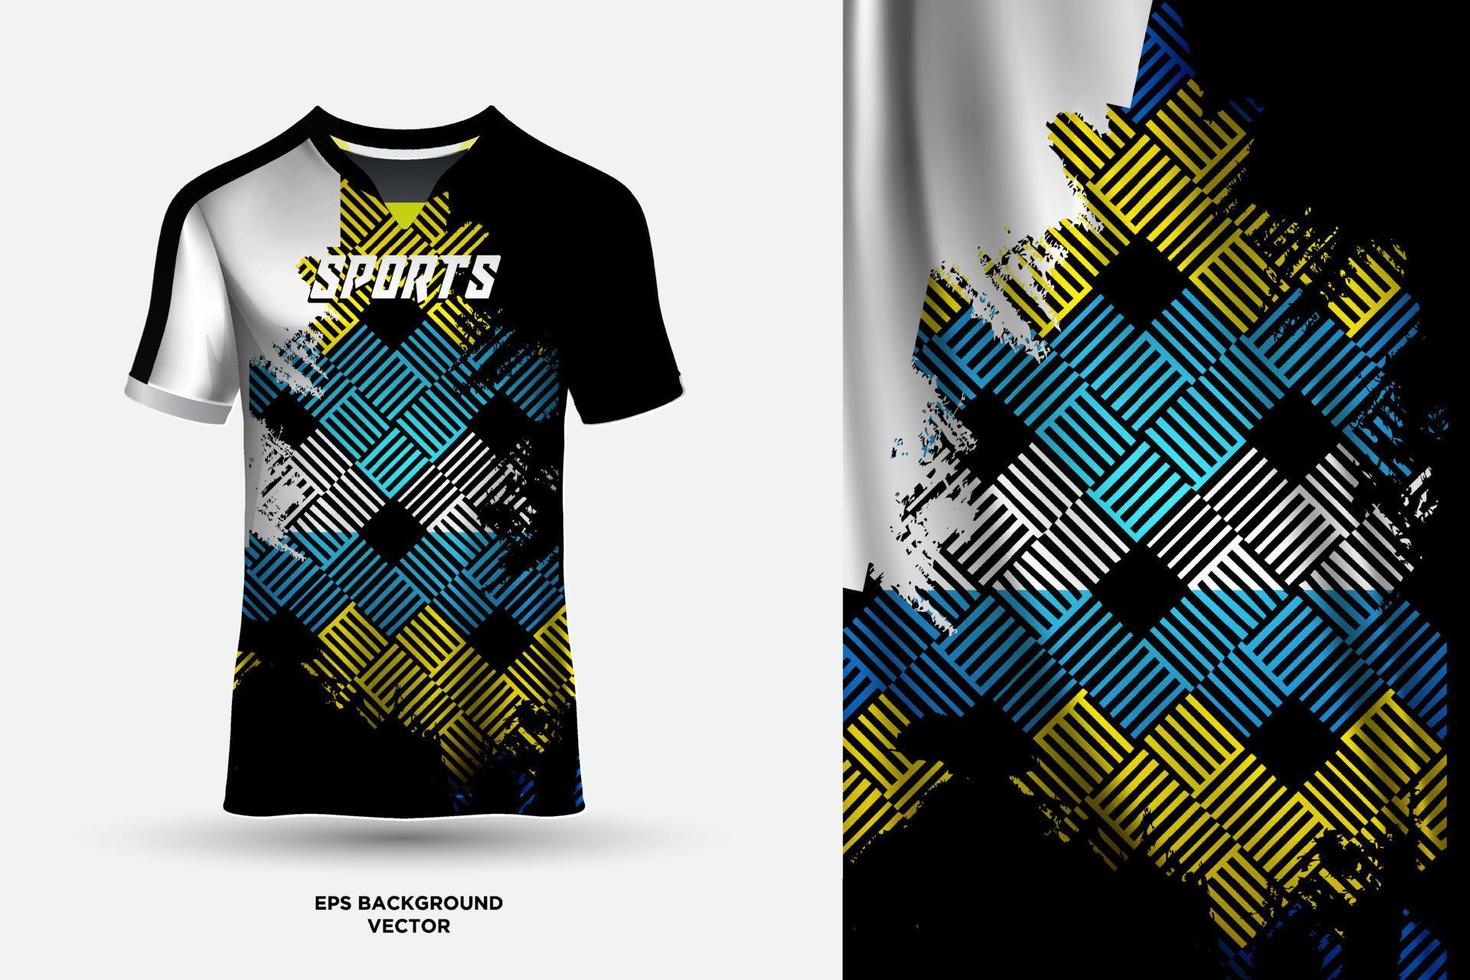 diseño futurista y fantástico de camiseta de camiseta adecuado para deportes, carreras, fútbol, juegos y vectores de deportes electrónicos